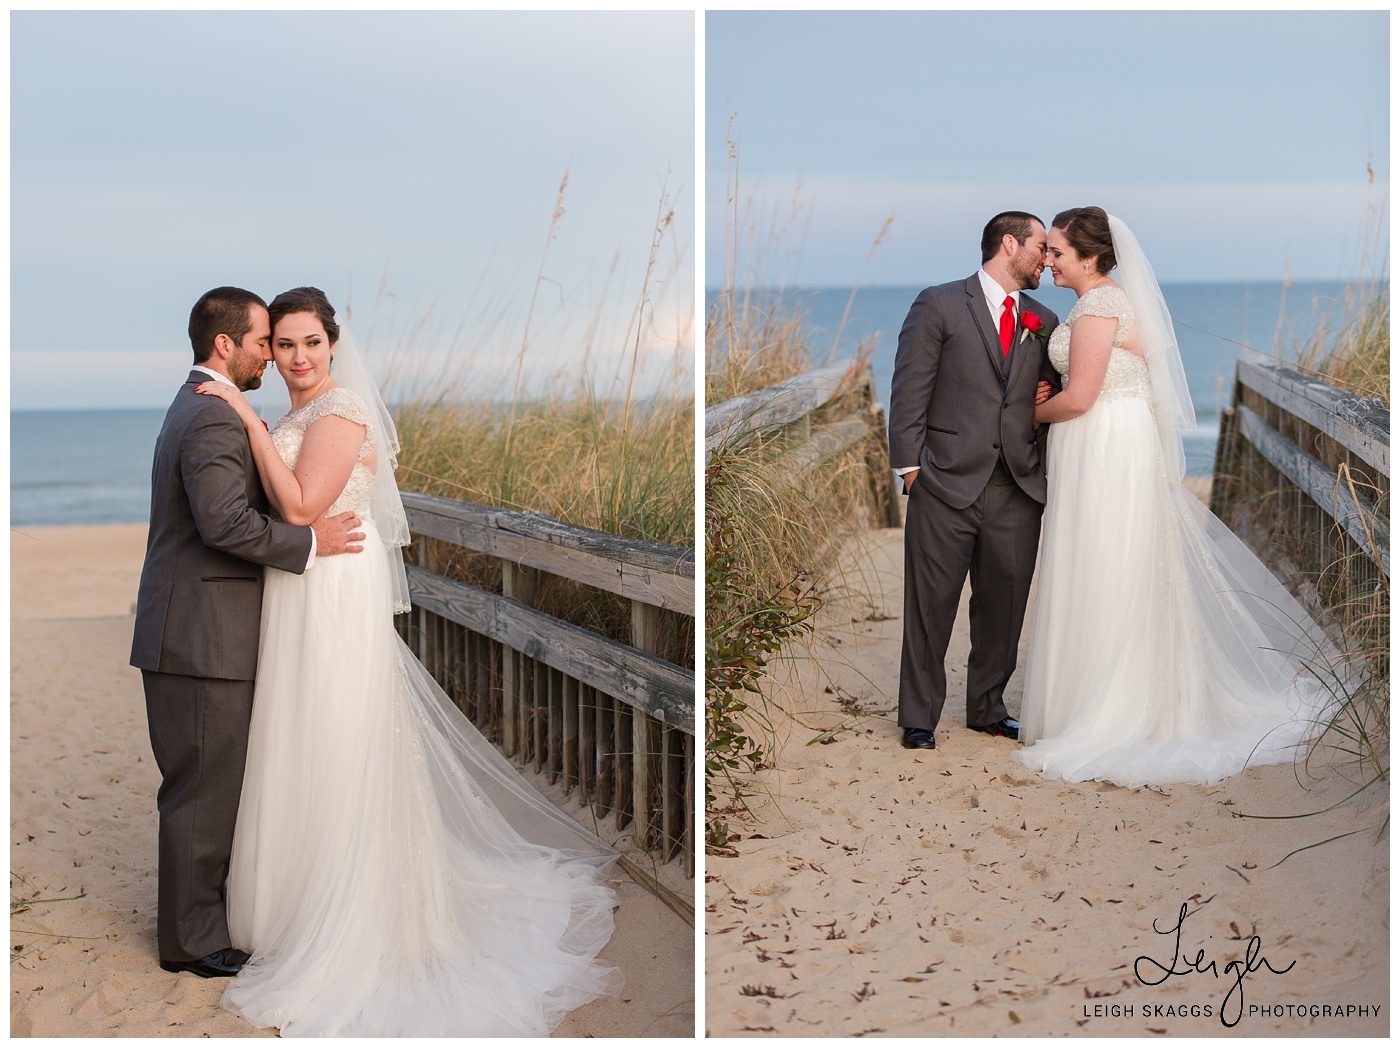 Ashley & Dan | A Shifting Sands Wedding